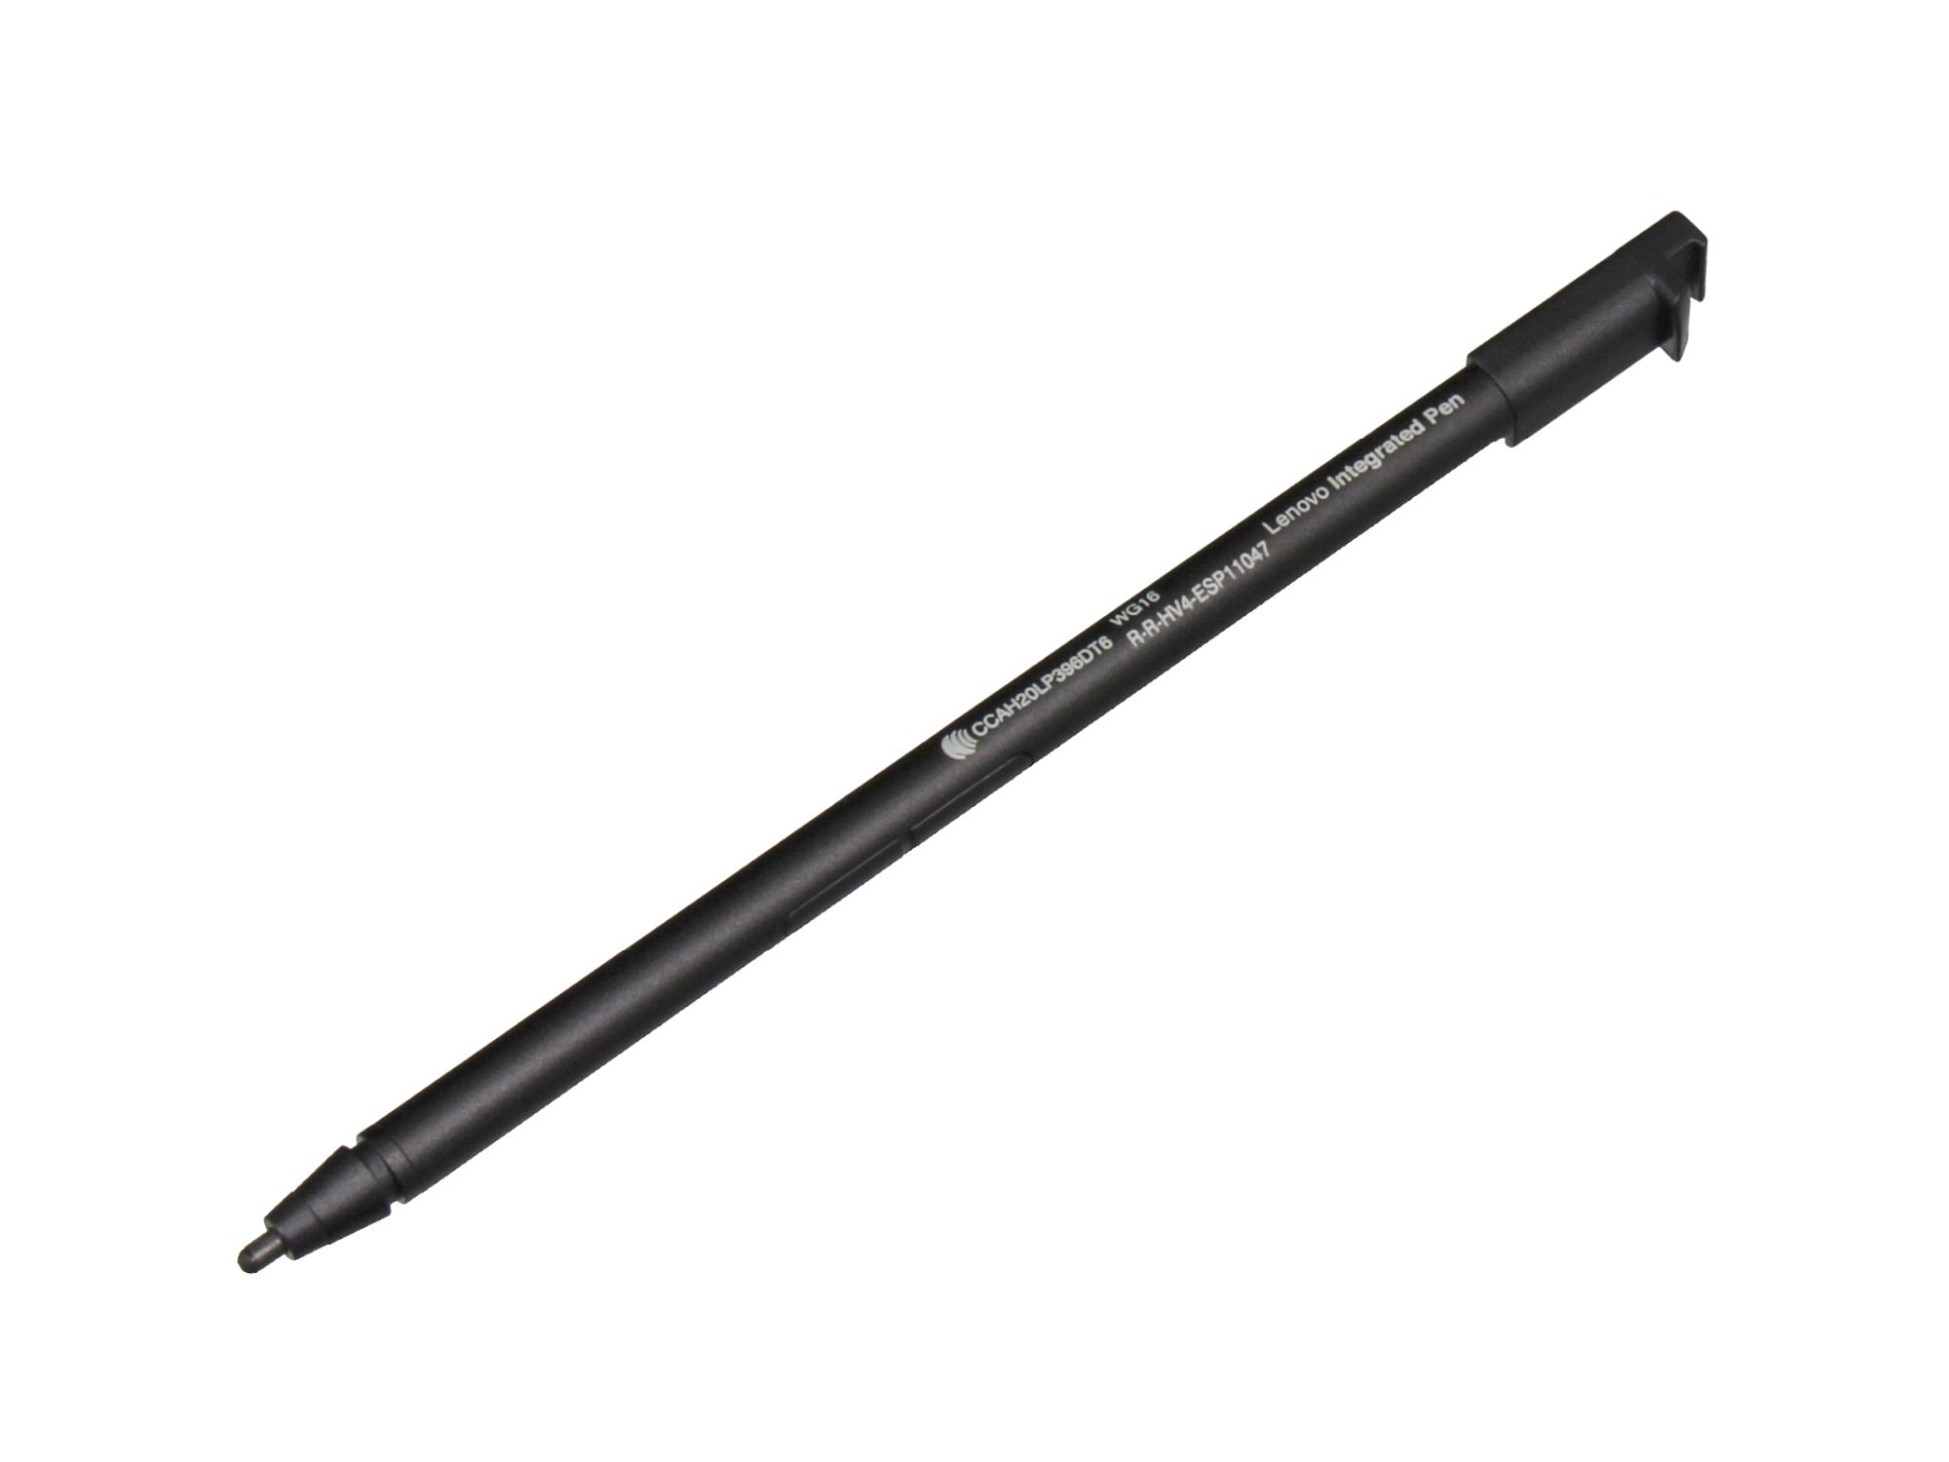 Lenovo R-R-HV4-ESP11047 Stylus Pen